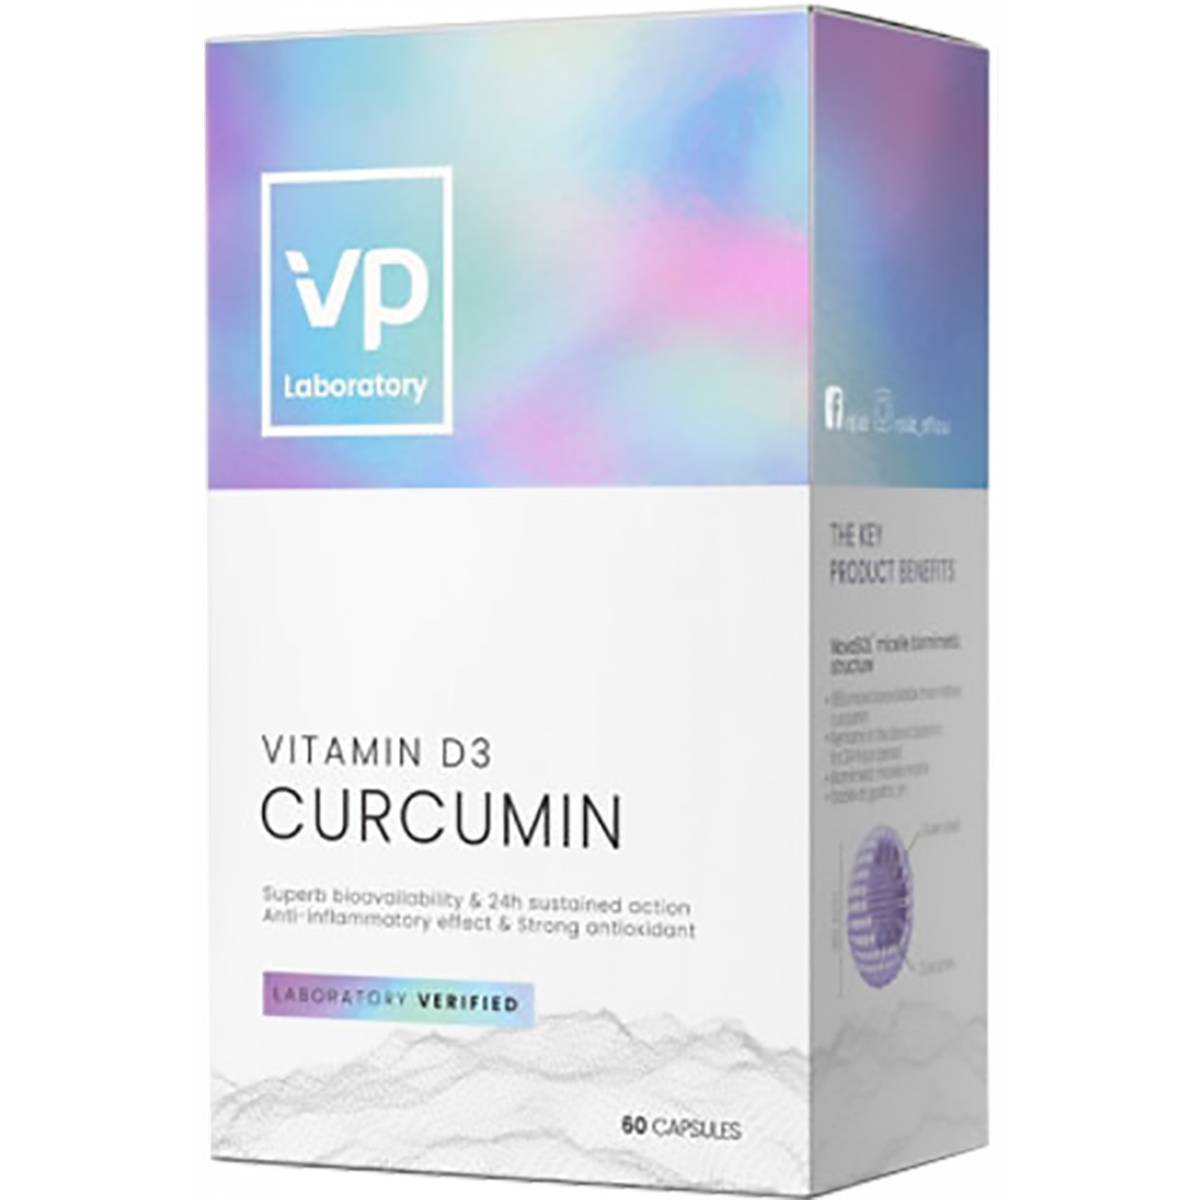 Vp laboratory Curcumin + Vitamin D3, 60 капсул, VPLab Vp laboratory Curcumin + Vitamin D3, 60 капсул, VPLab - фото 1